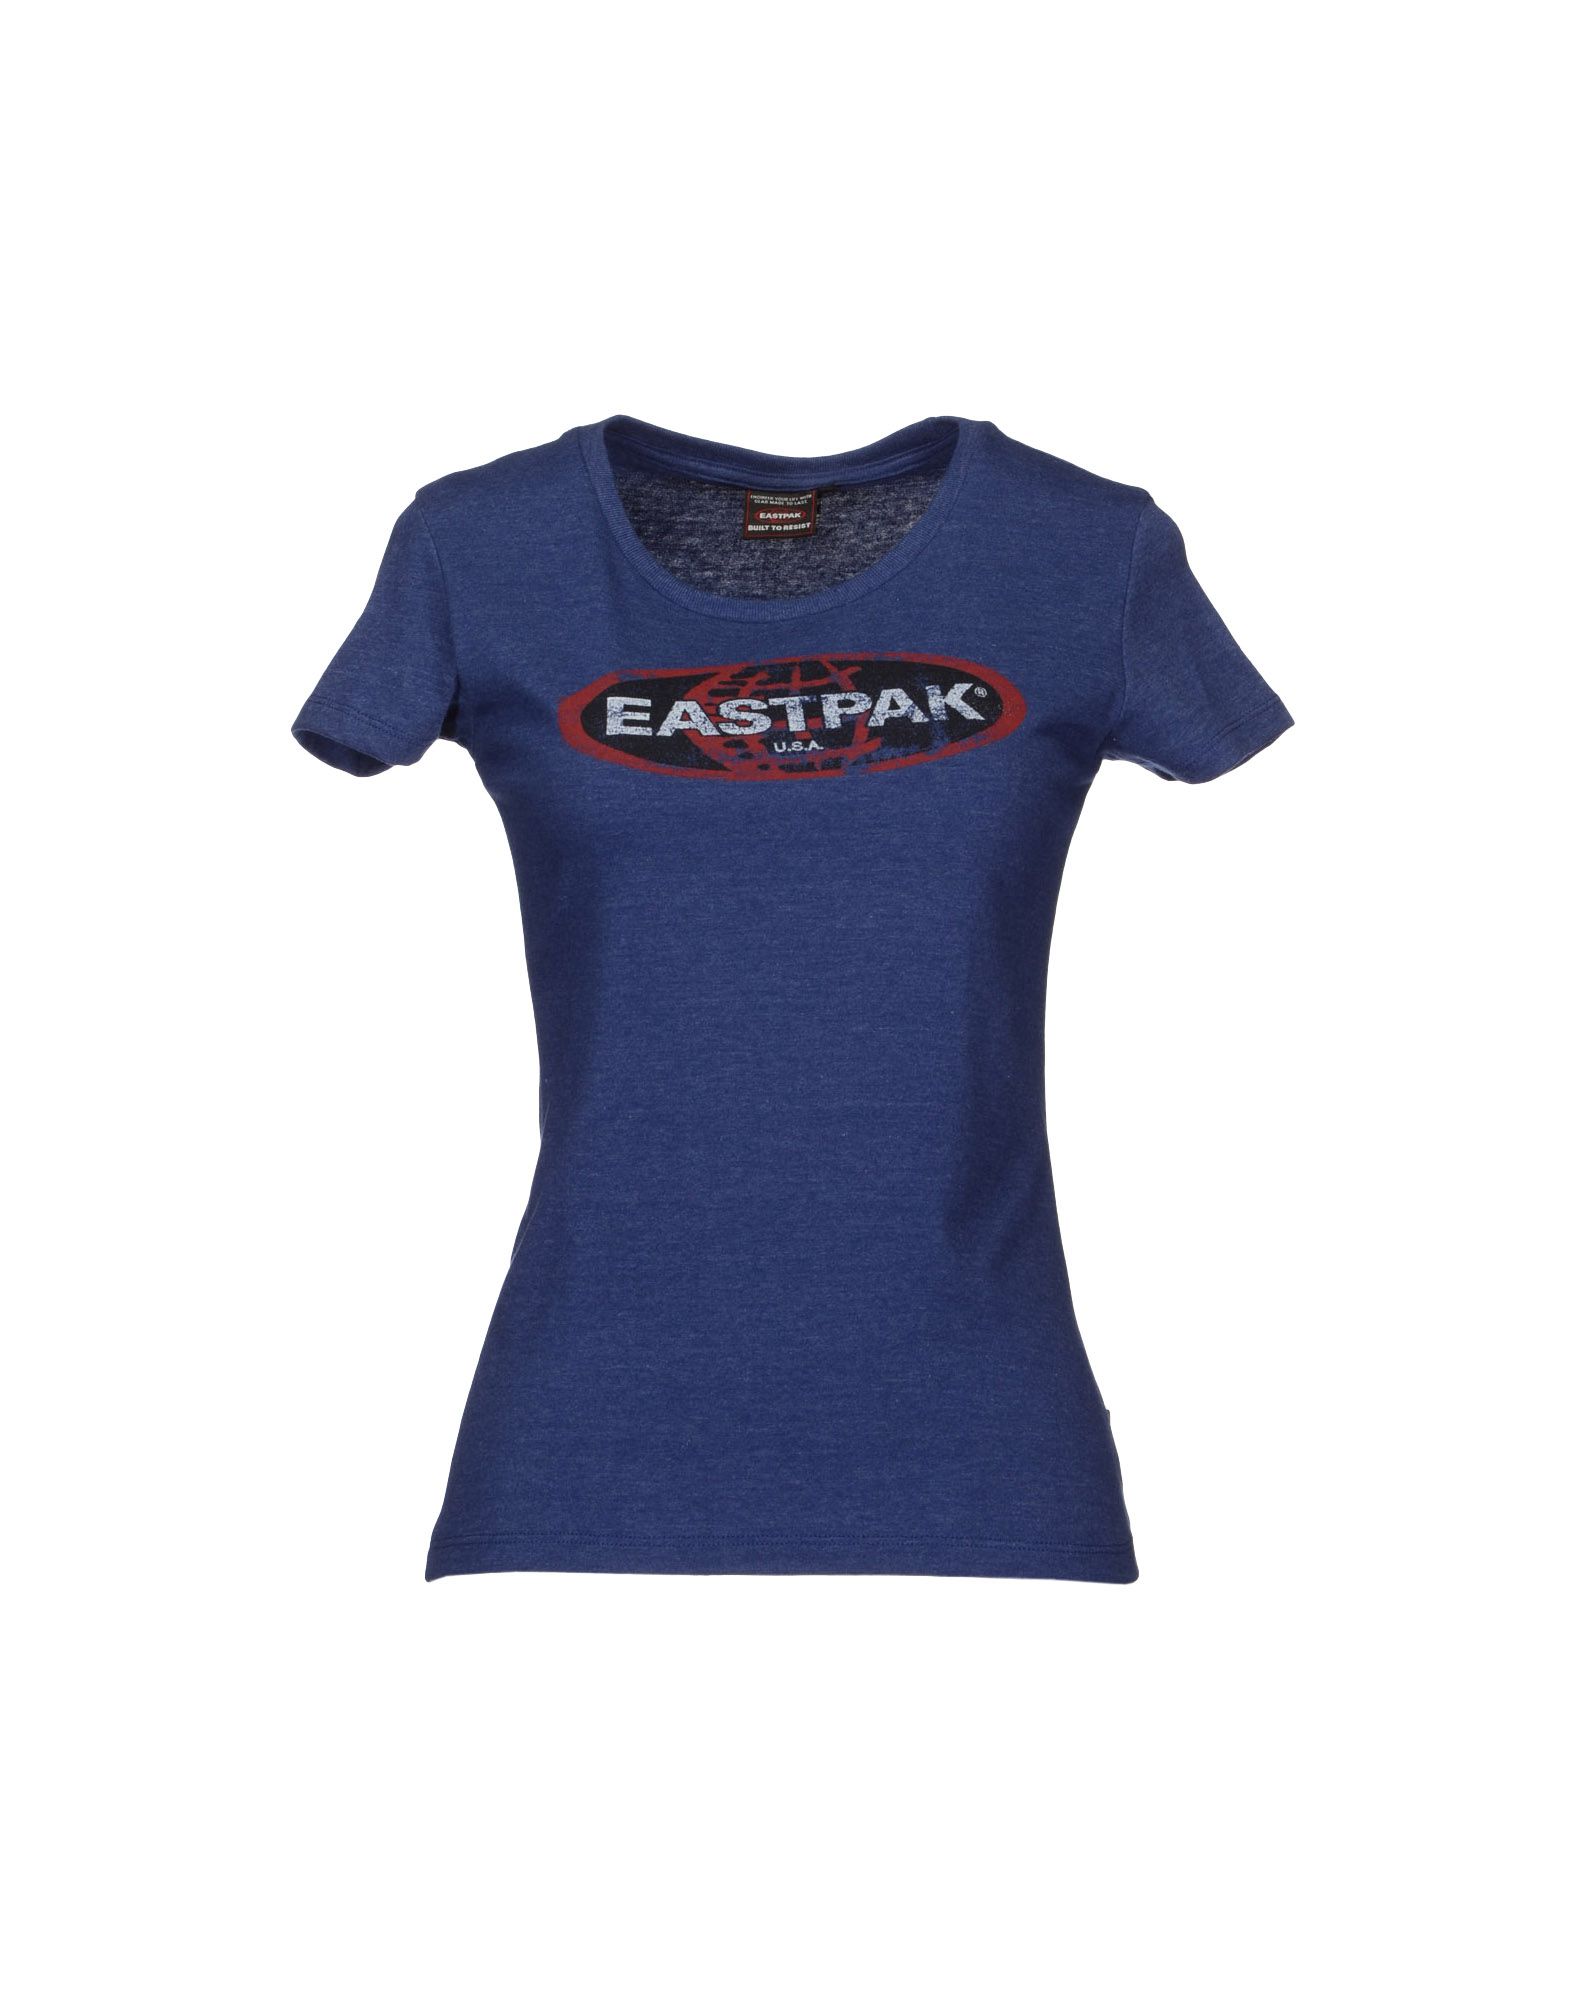 Foto Eastpak Camisetas De Manga Corta Mujer Azul pastel foto 861038